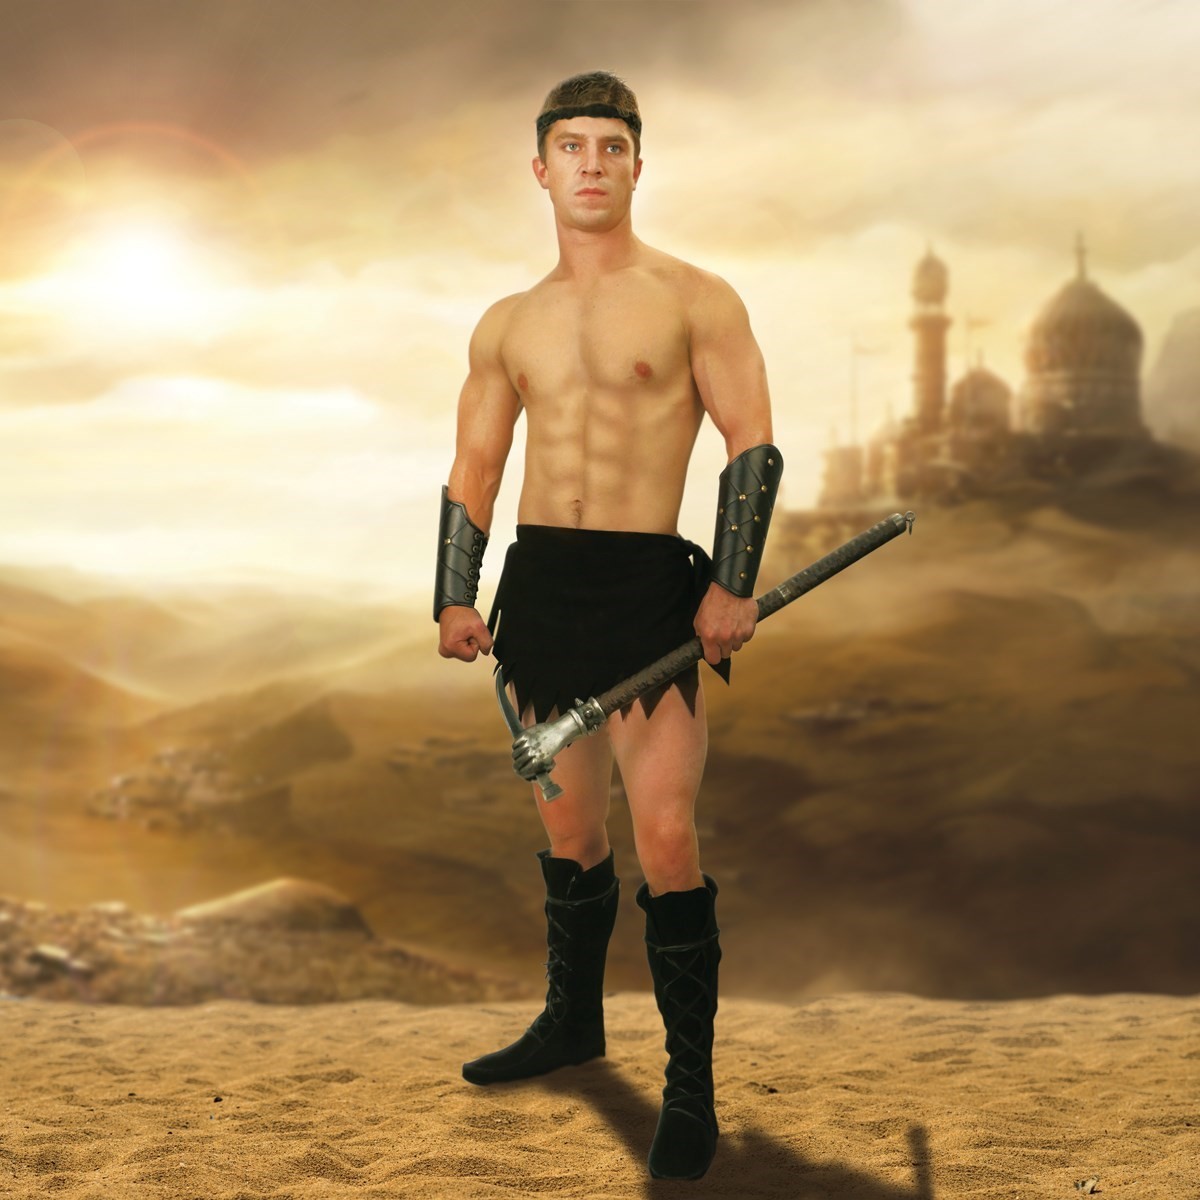 Suede Loincloth Men's Fantasy Warrior Costume.